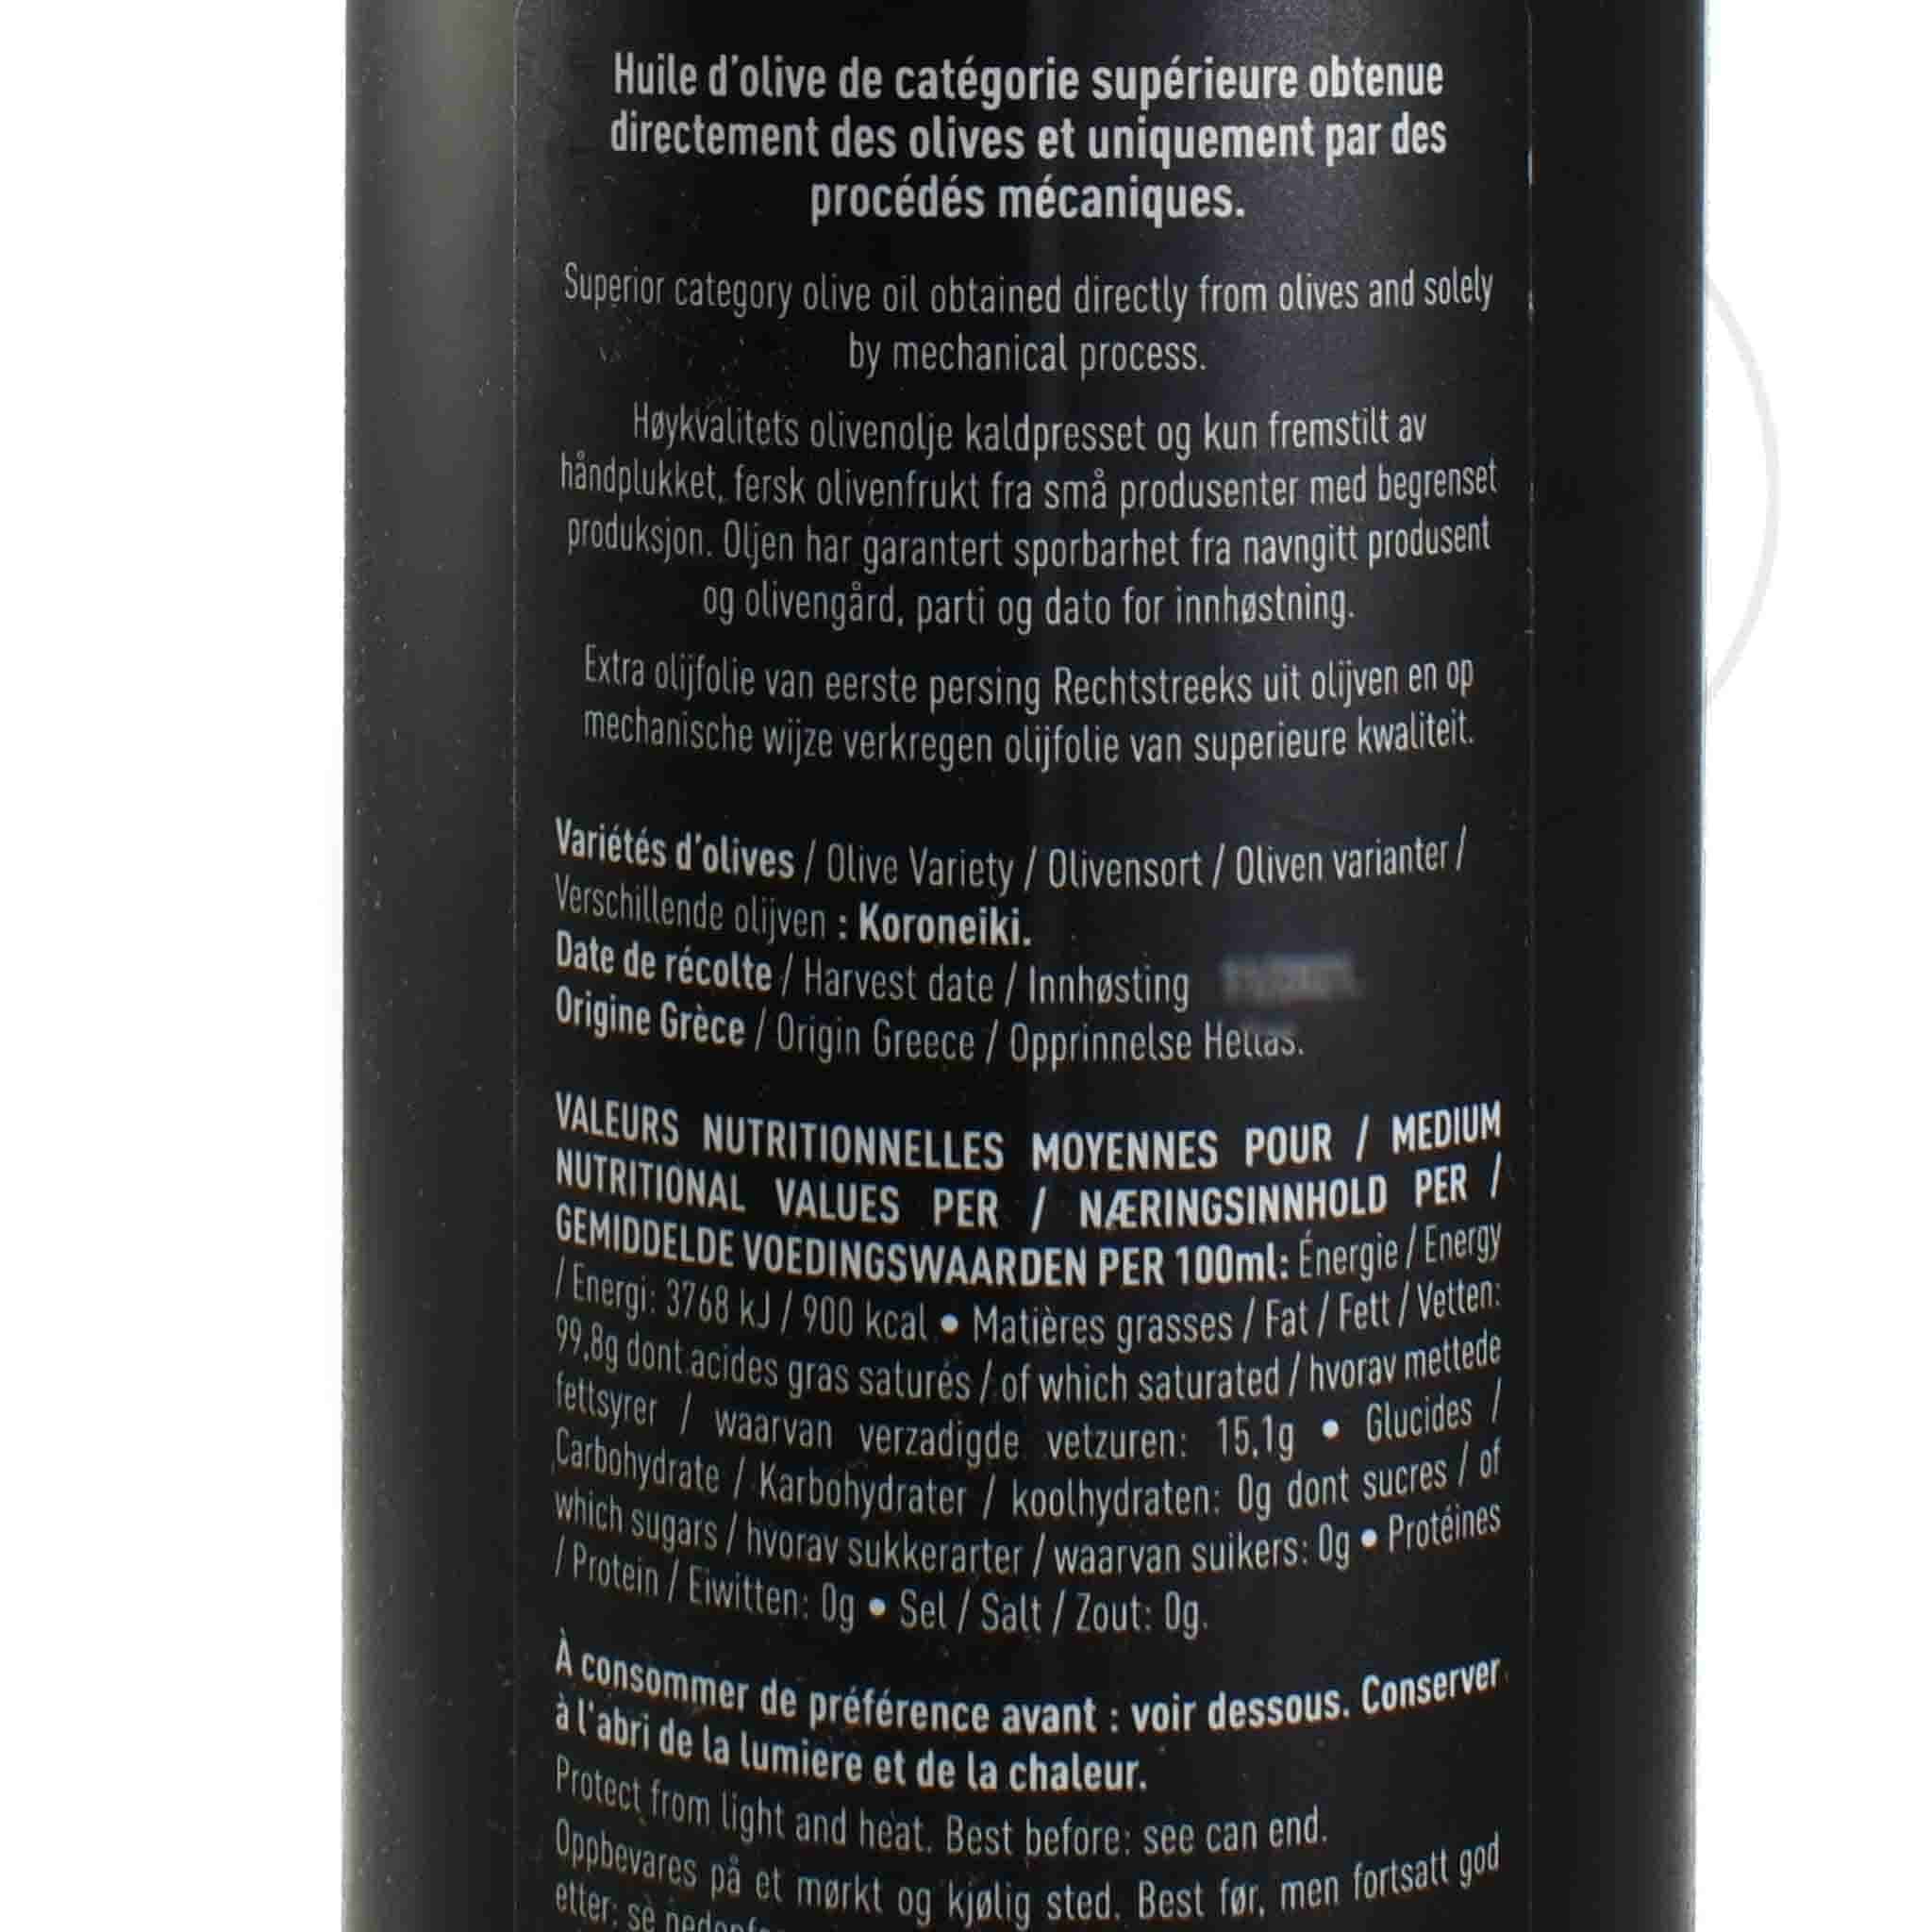 Maison Bremond Extra Virgin Olive Oil De Tous Les Jours 750ml Ingredients